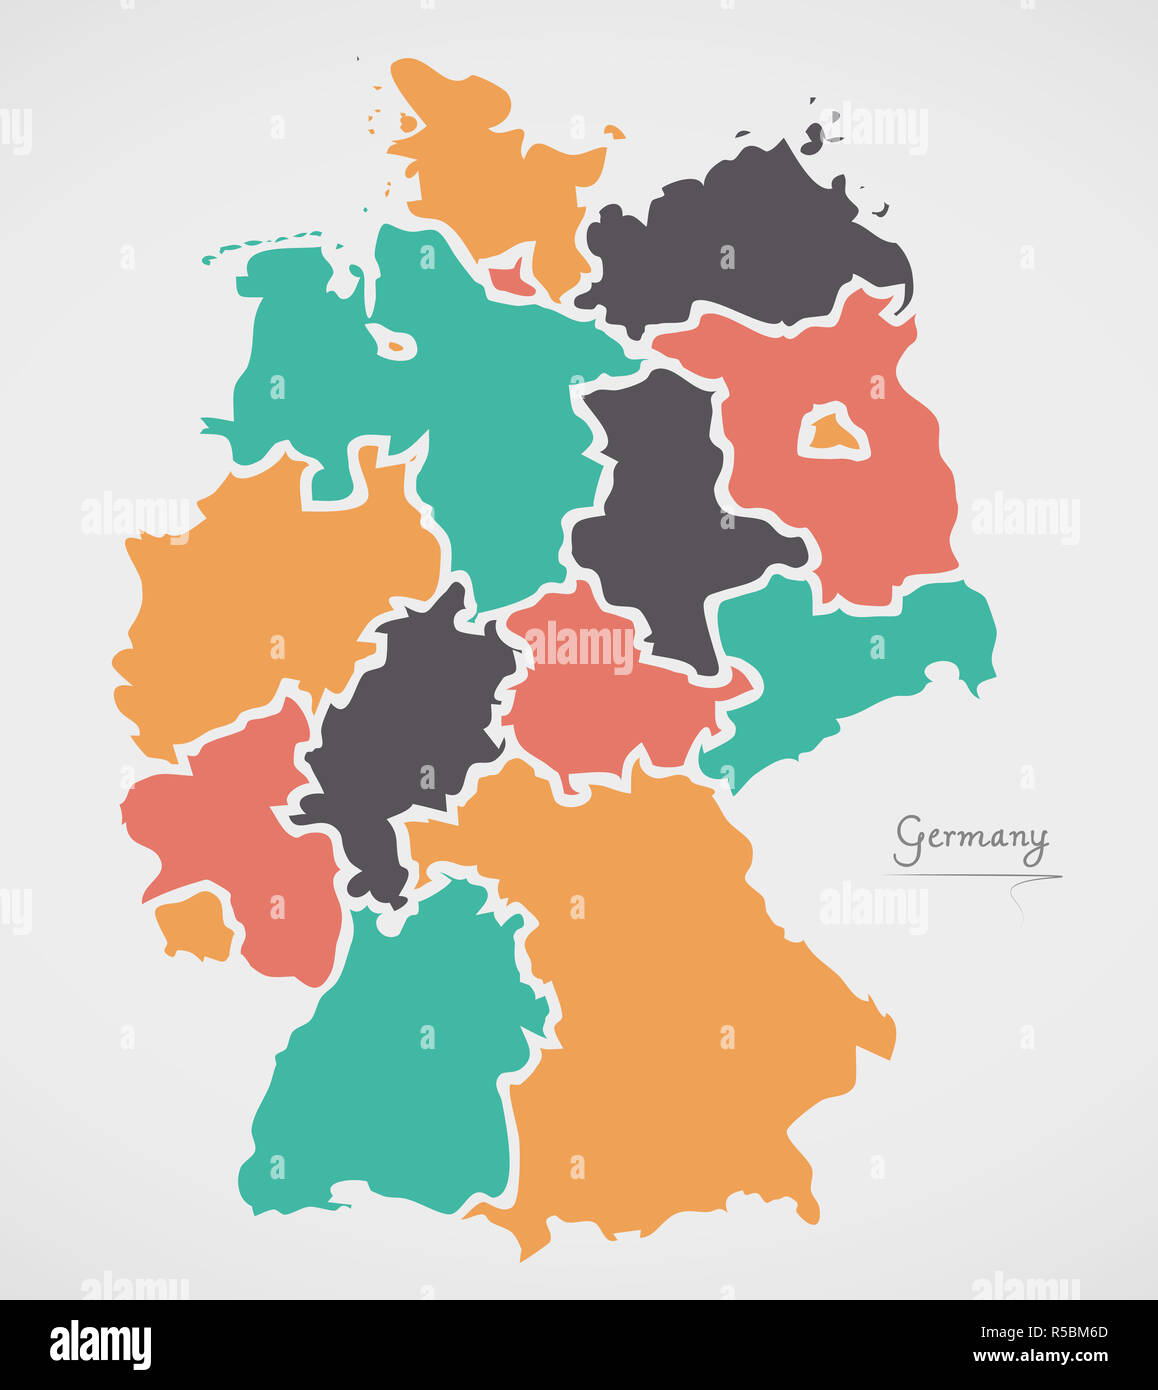 Deutschland Karte mit Staaten und moderne Runde Formen Stockfoto